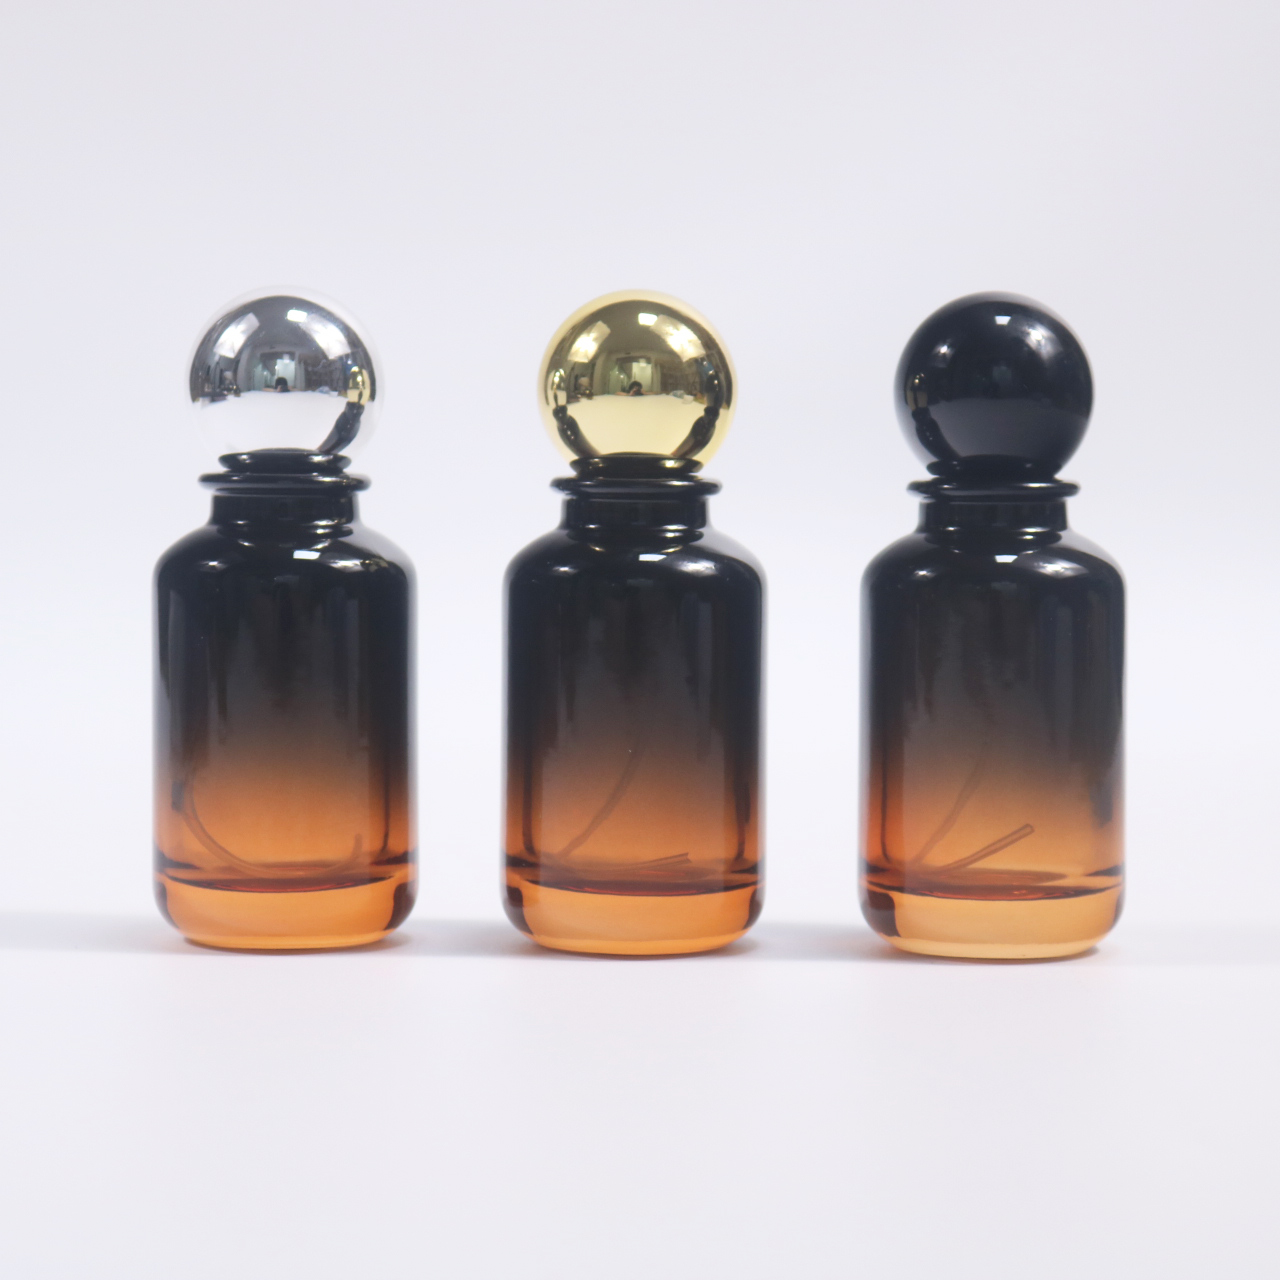 Bottiglie di profumo di lusso: una fusione senza tempo di eleganza e profumi squisiti